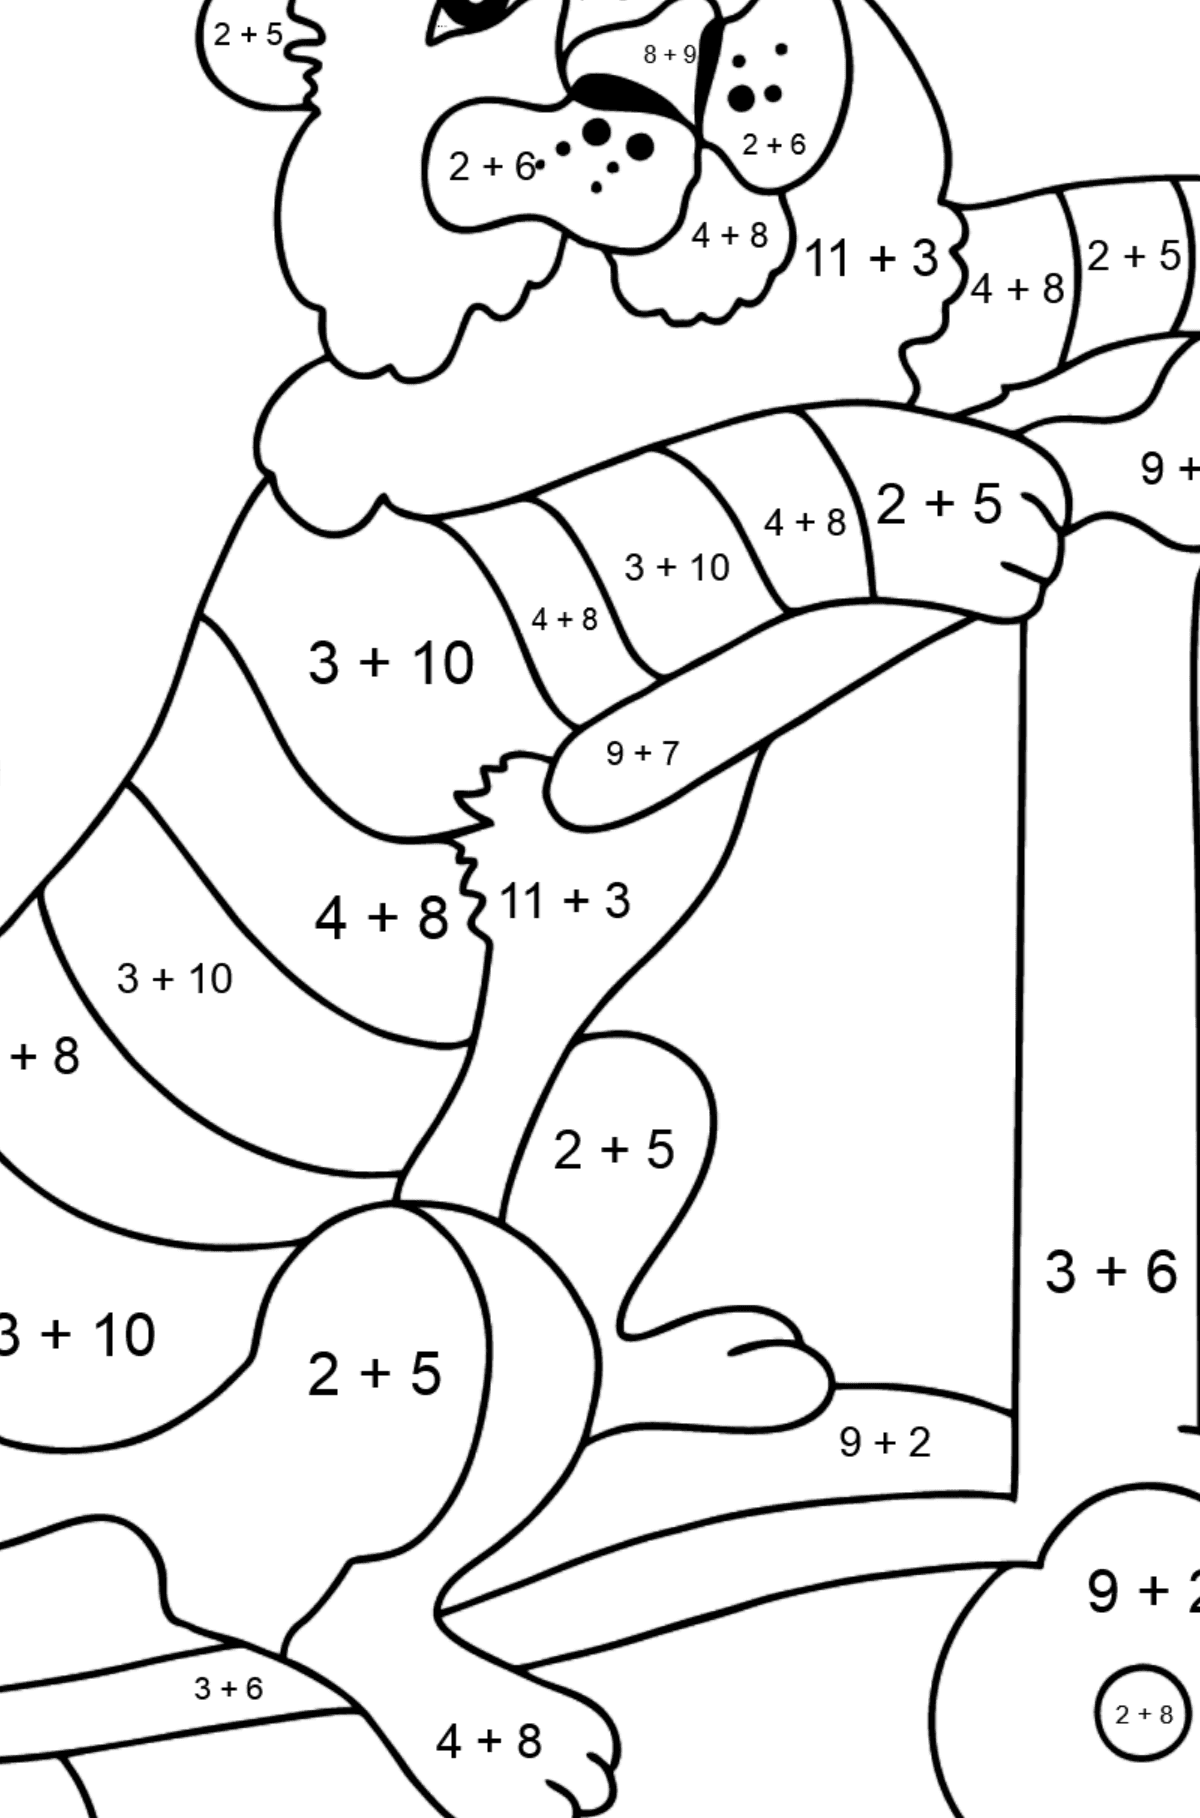 Ein Tiger zum Ausmalen auf einem ausgefallenen Roller - Mathe Ausmalbilder - Addition für Kinder